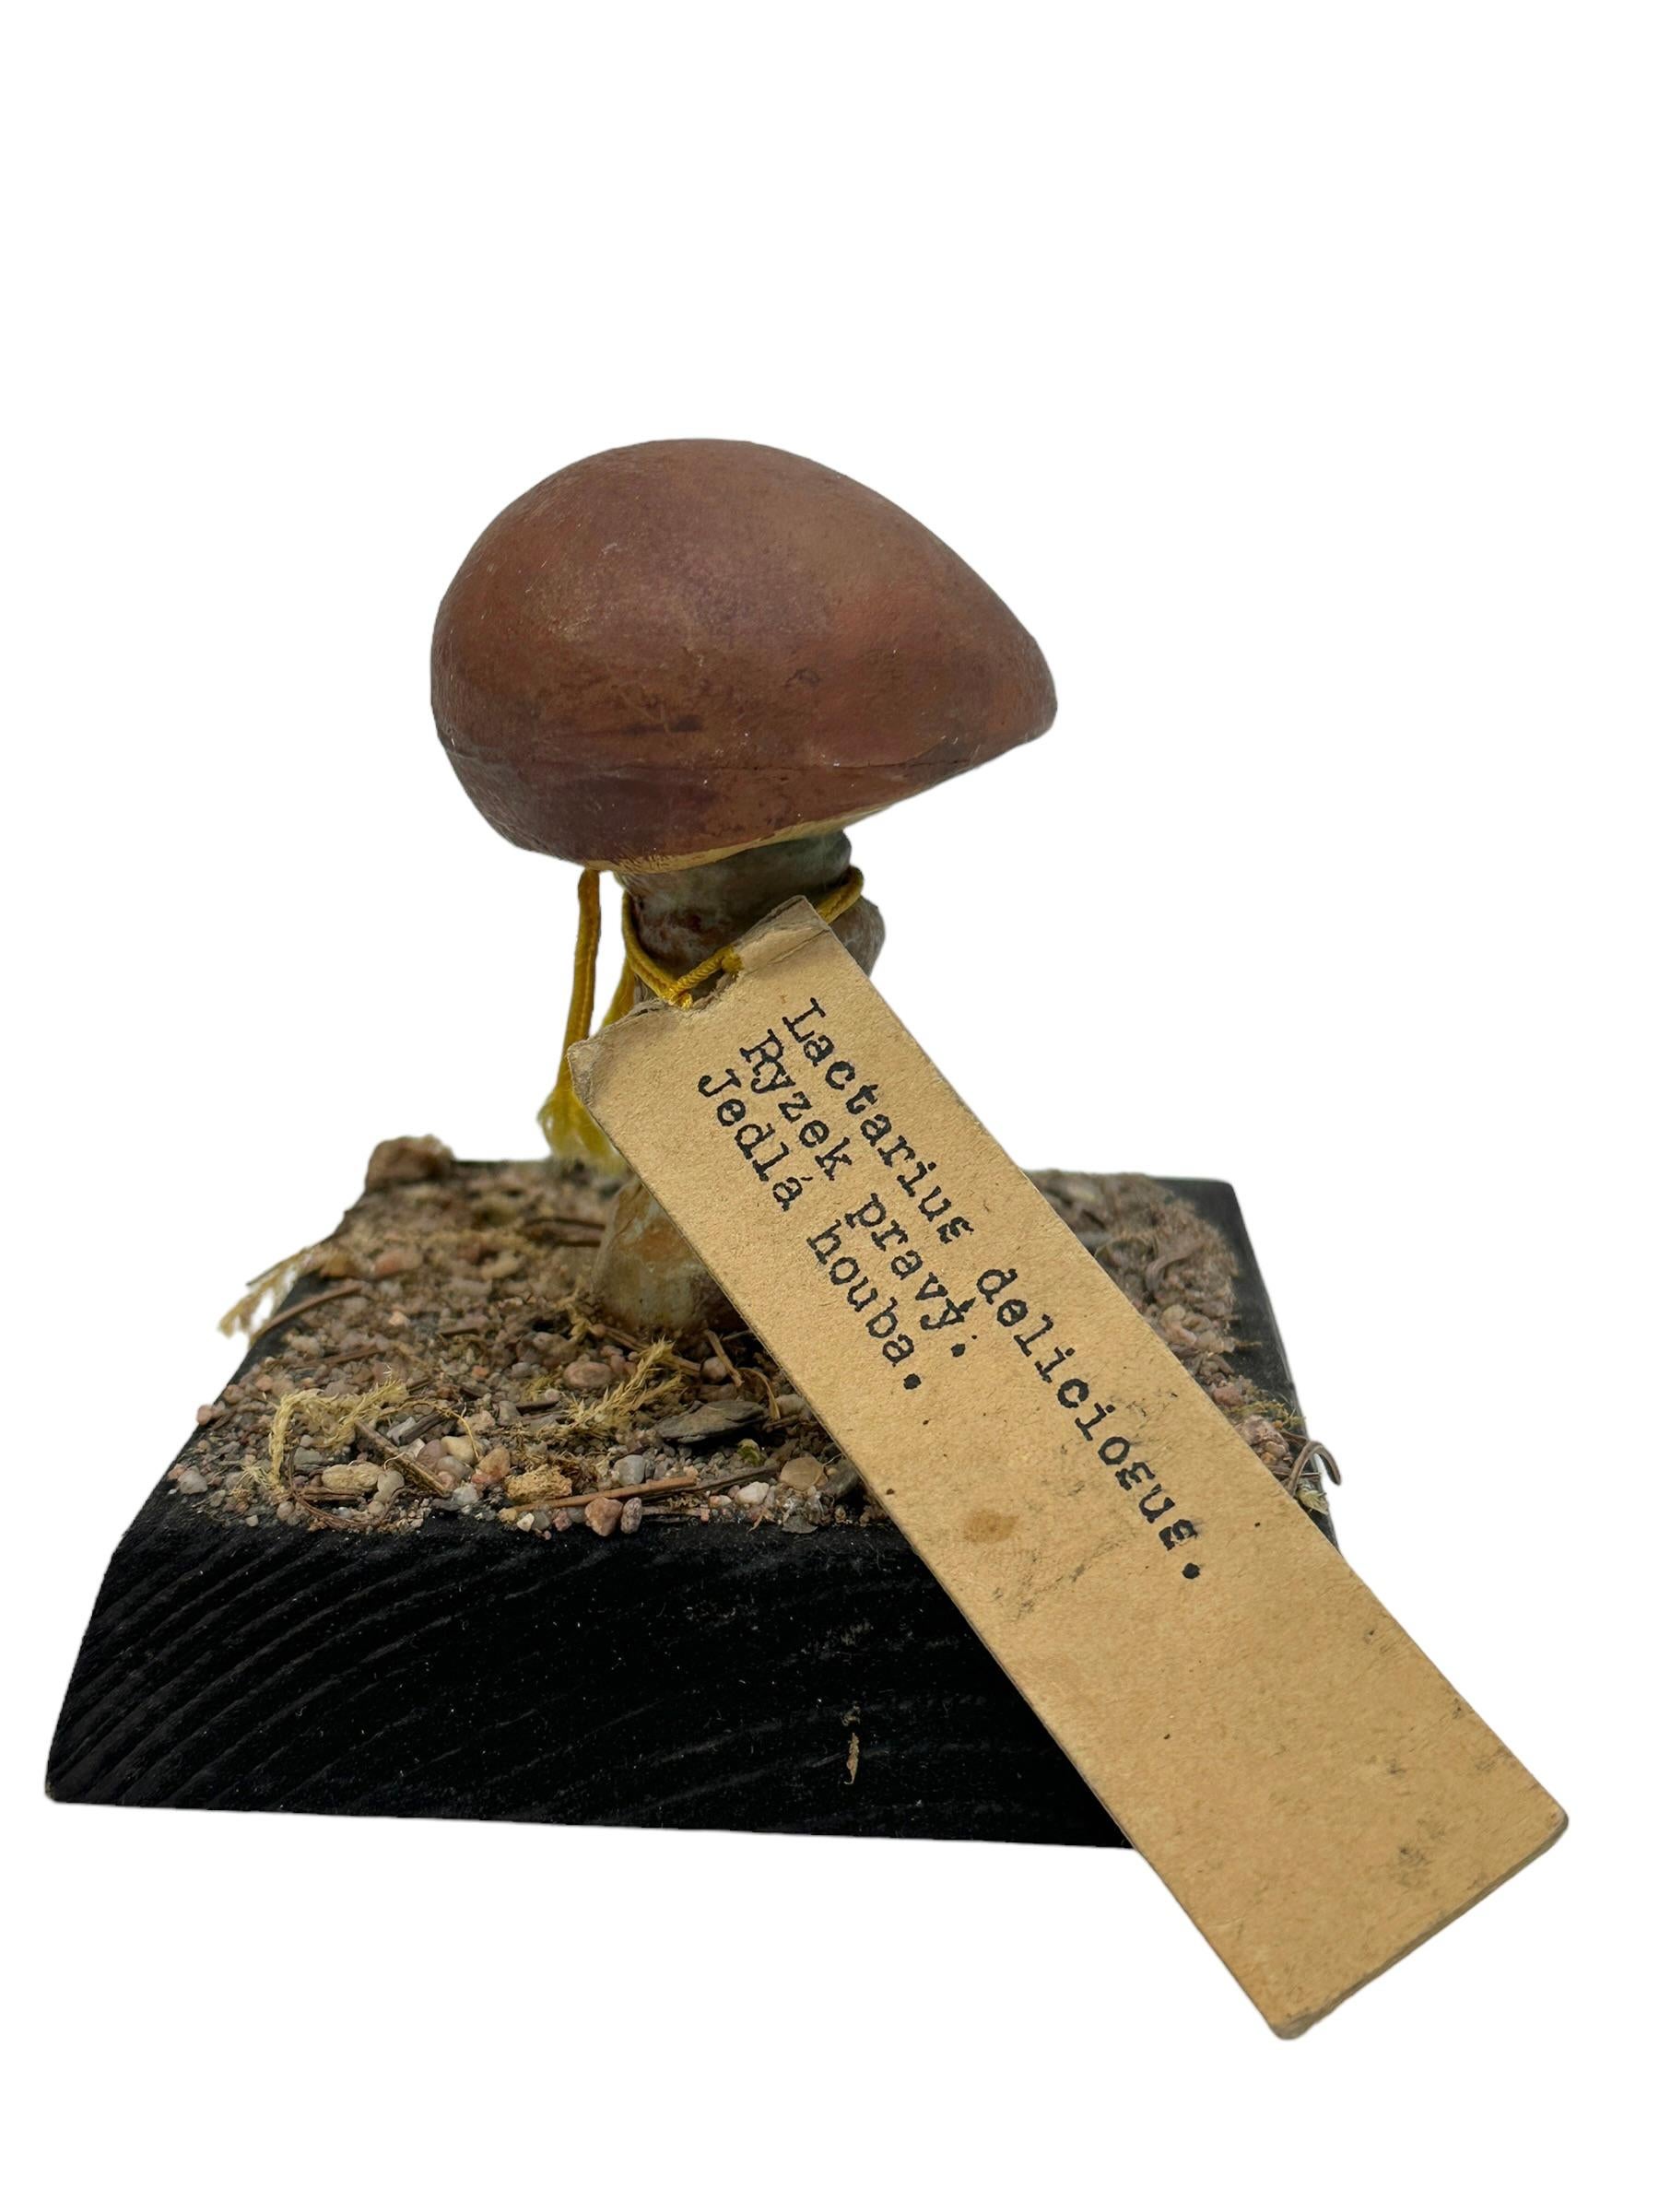 Hand-Crafted Mushroom Botanical Scientific Specimen Model Europe,  1950s or older For Sale